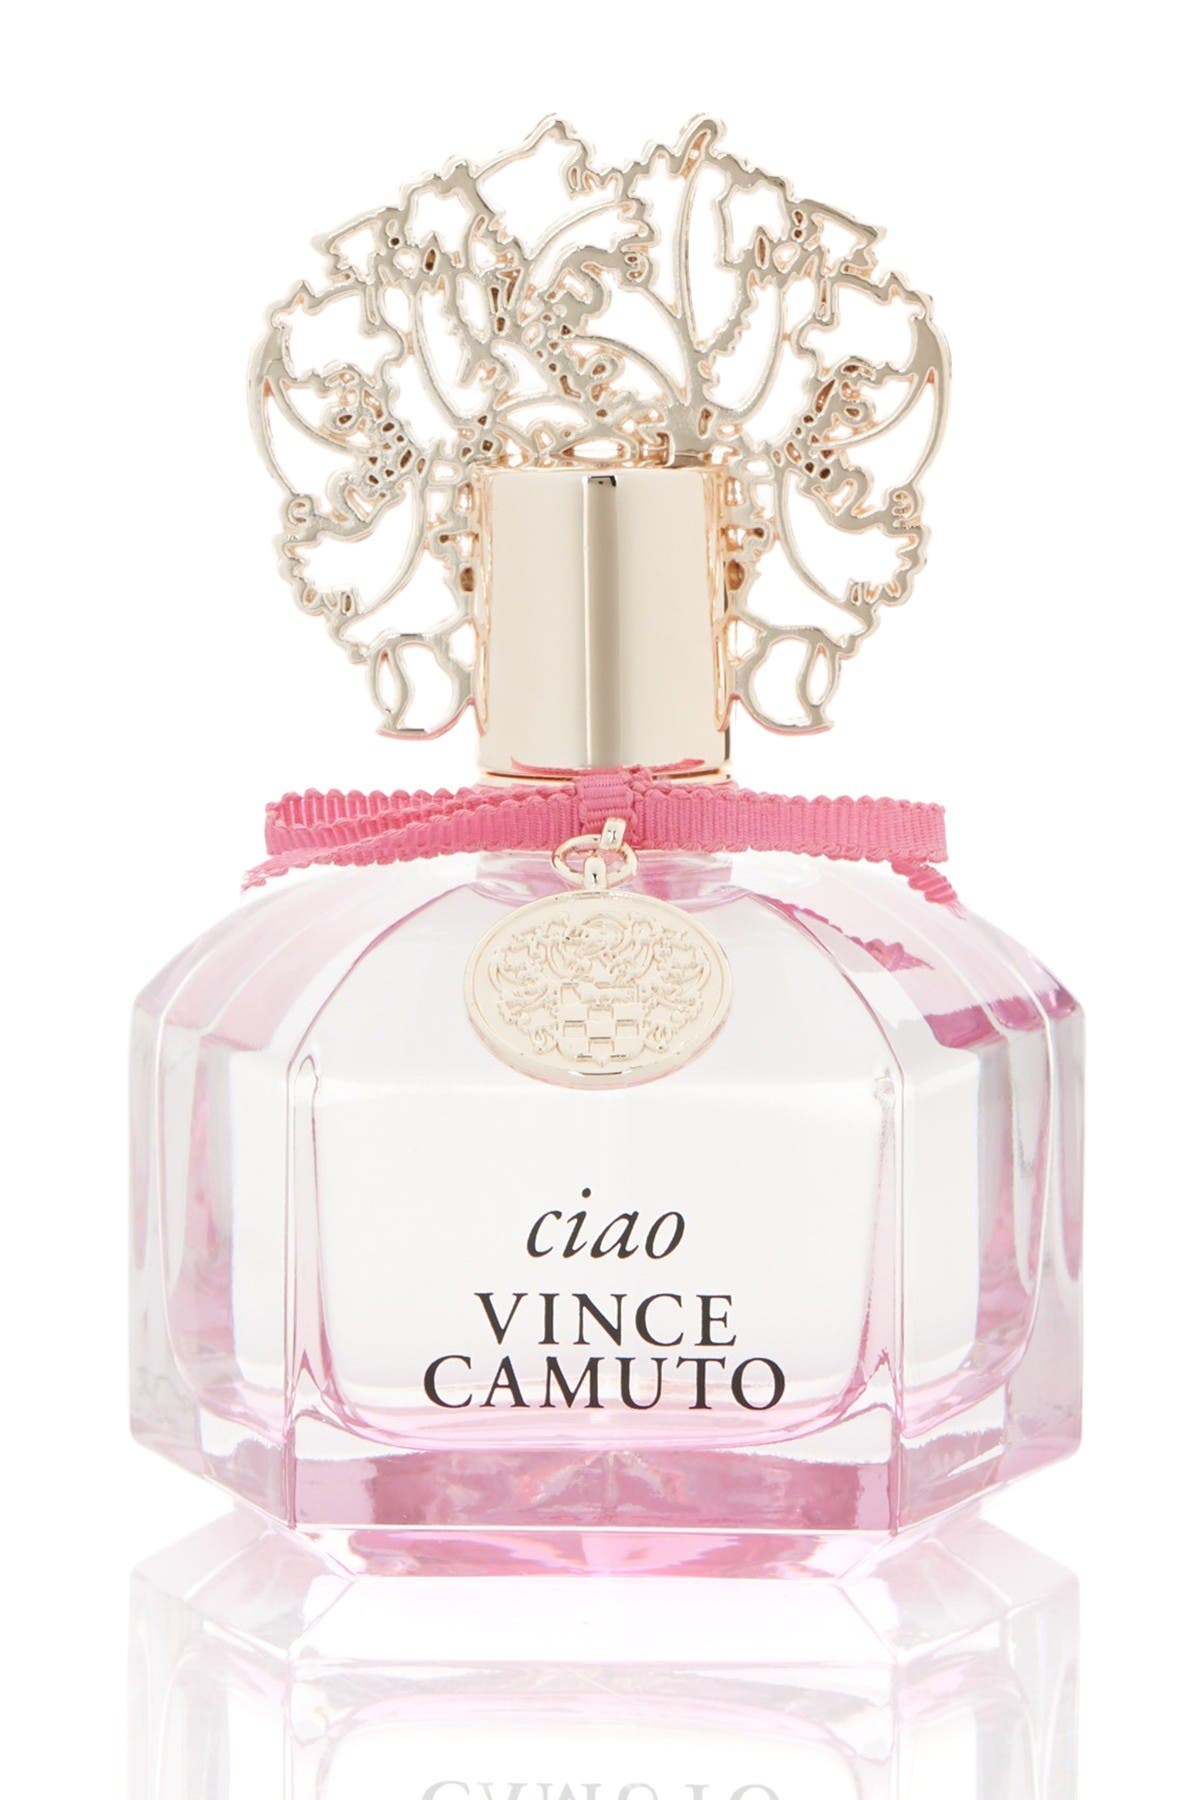 Vince Camuto Vince Camuto Ciao Eau de Parfum for women